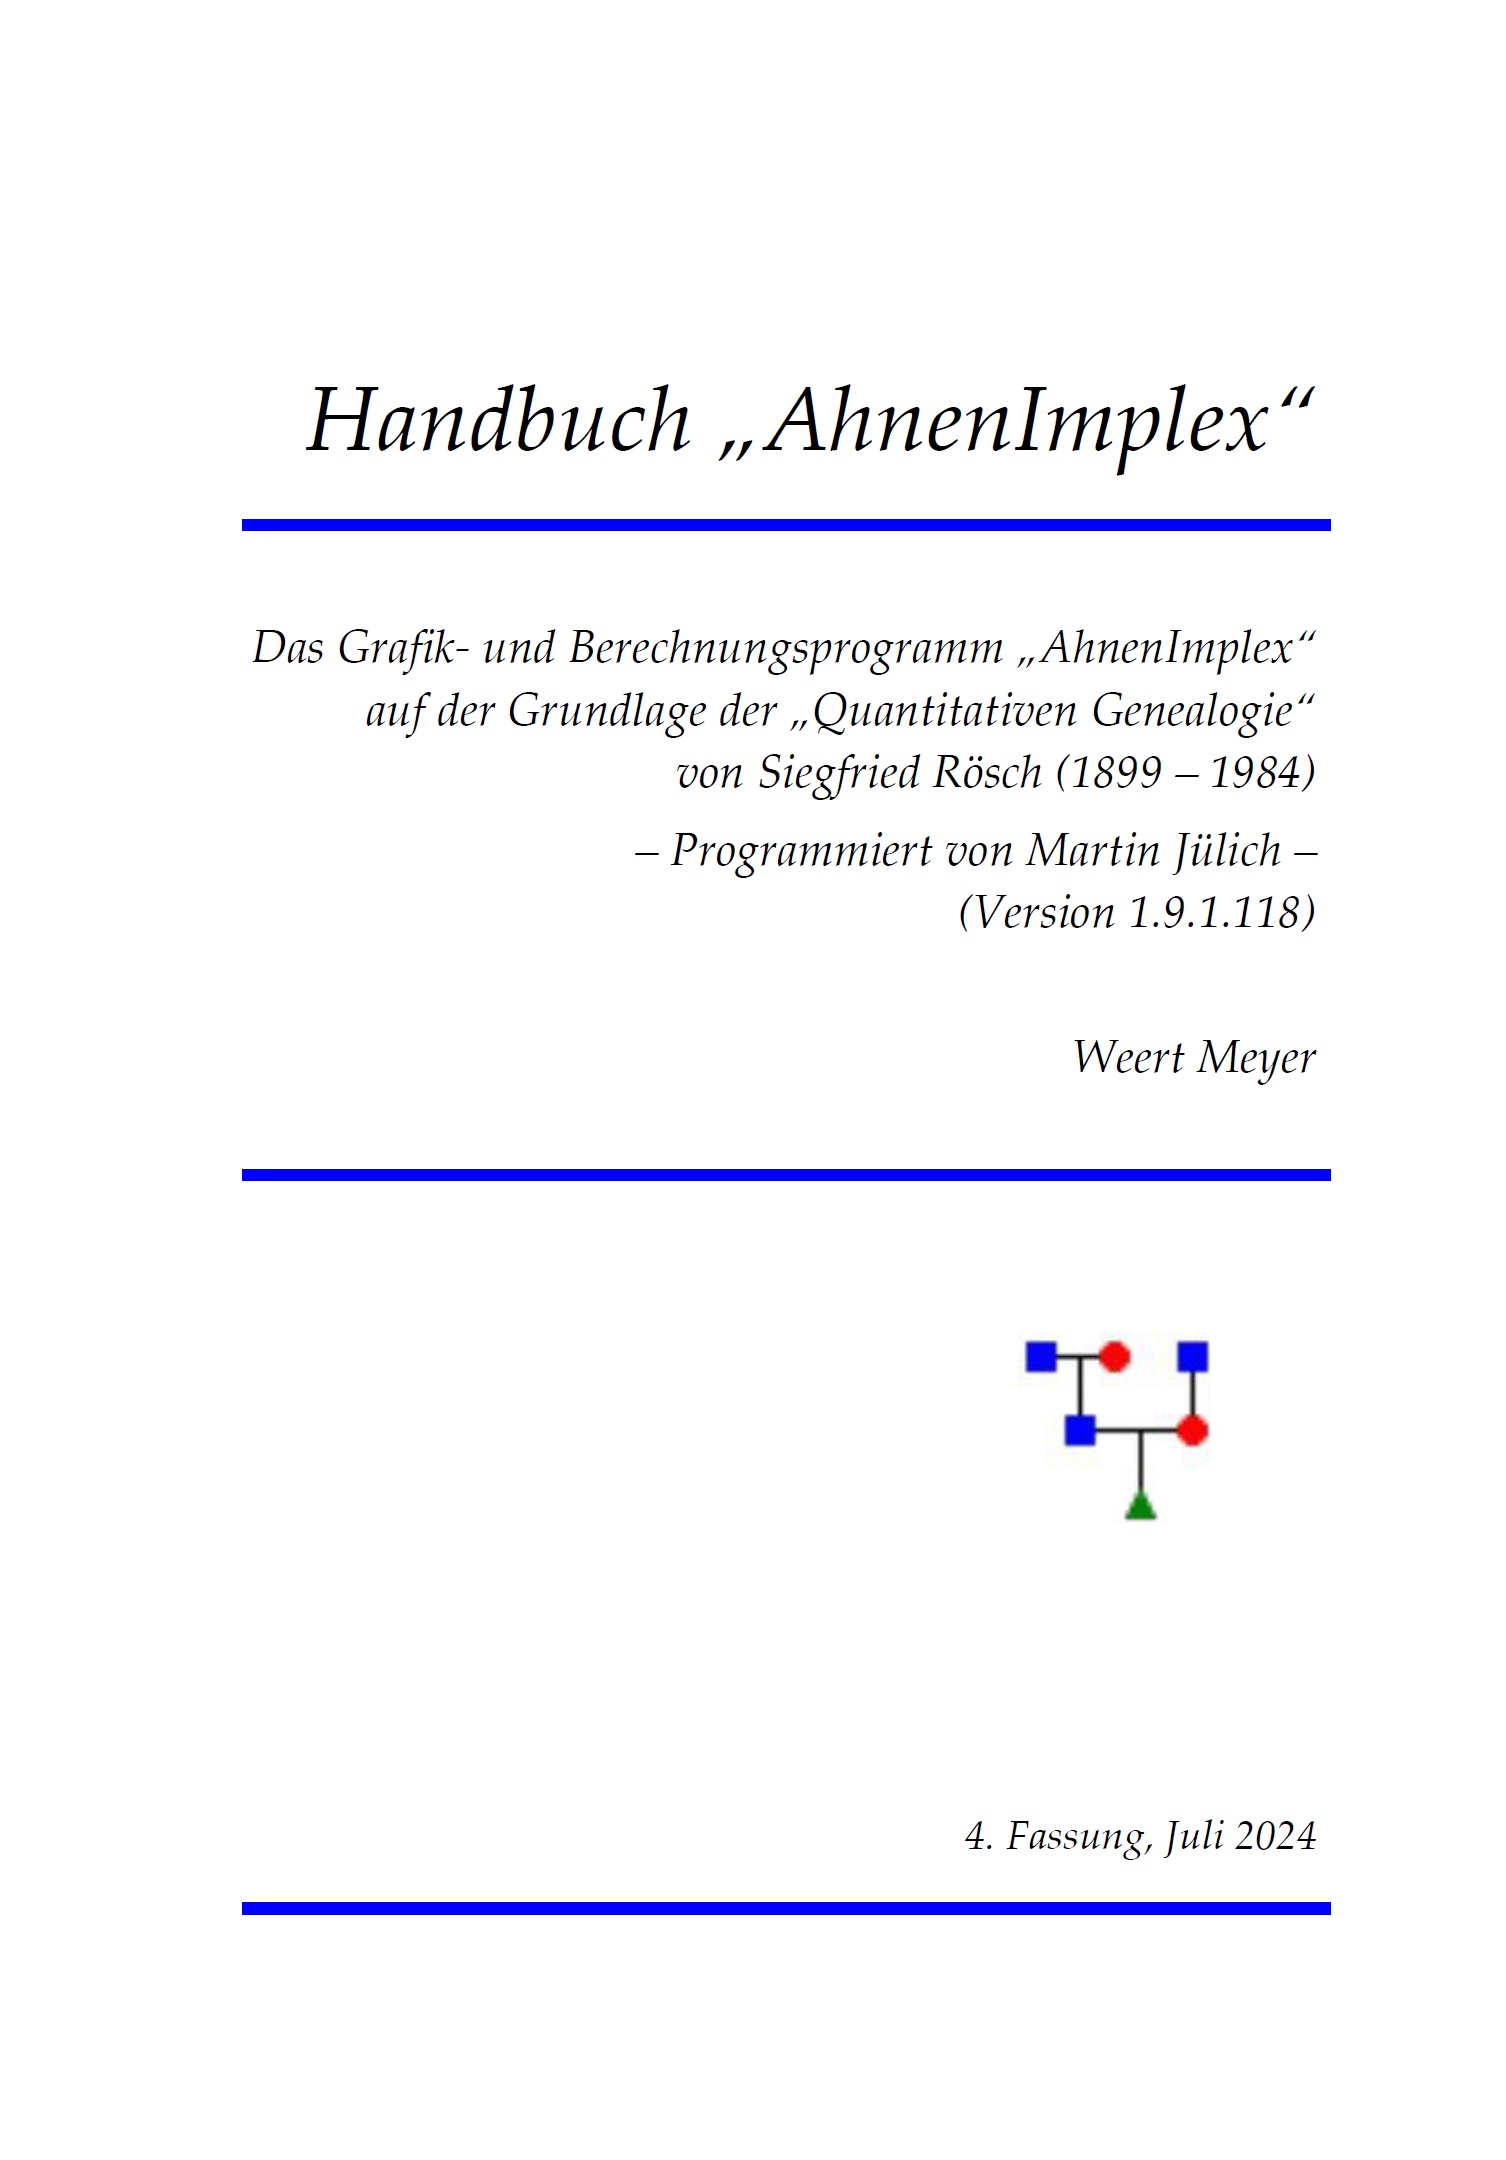 'AhnenImplex' - Handbuch von Weert Meyer zum Berechnungs- und Grafikprogramm